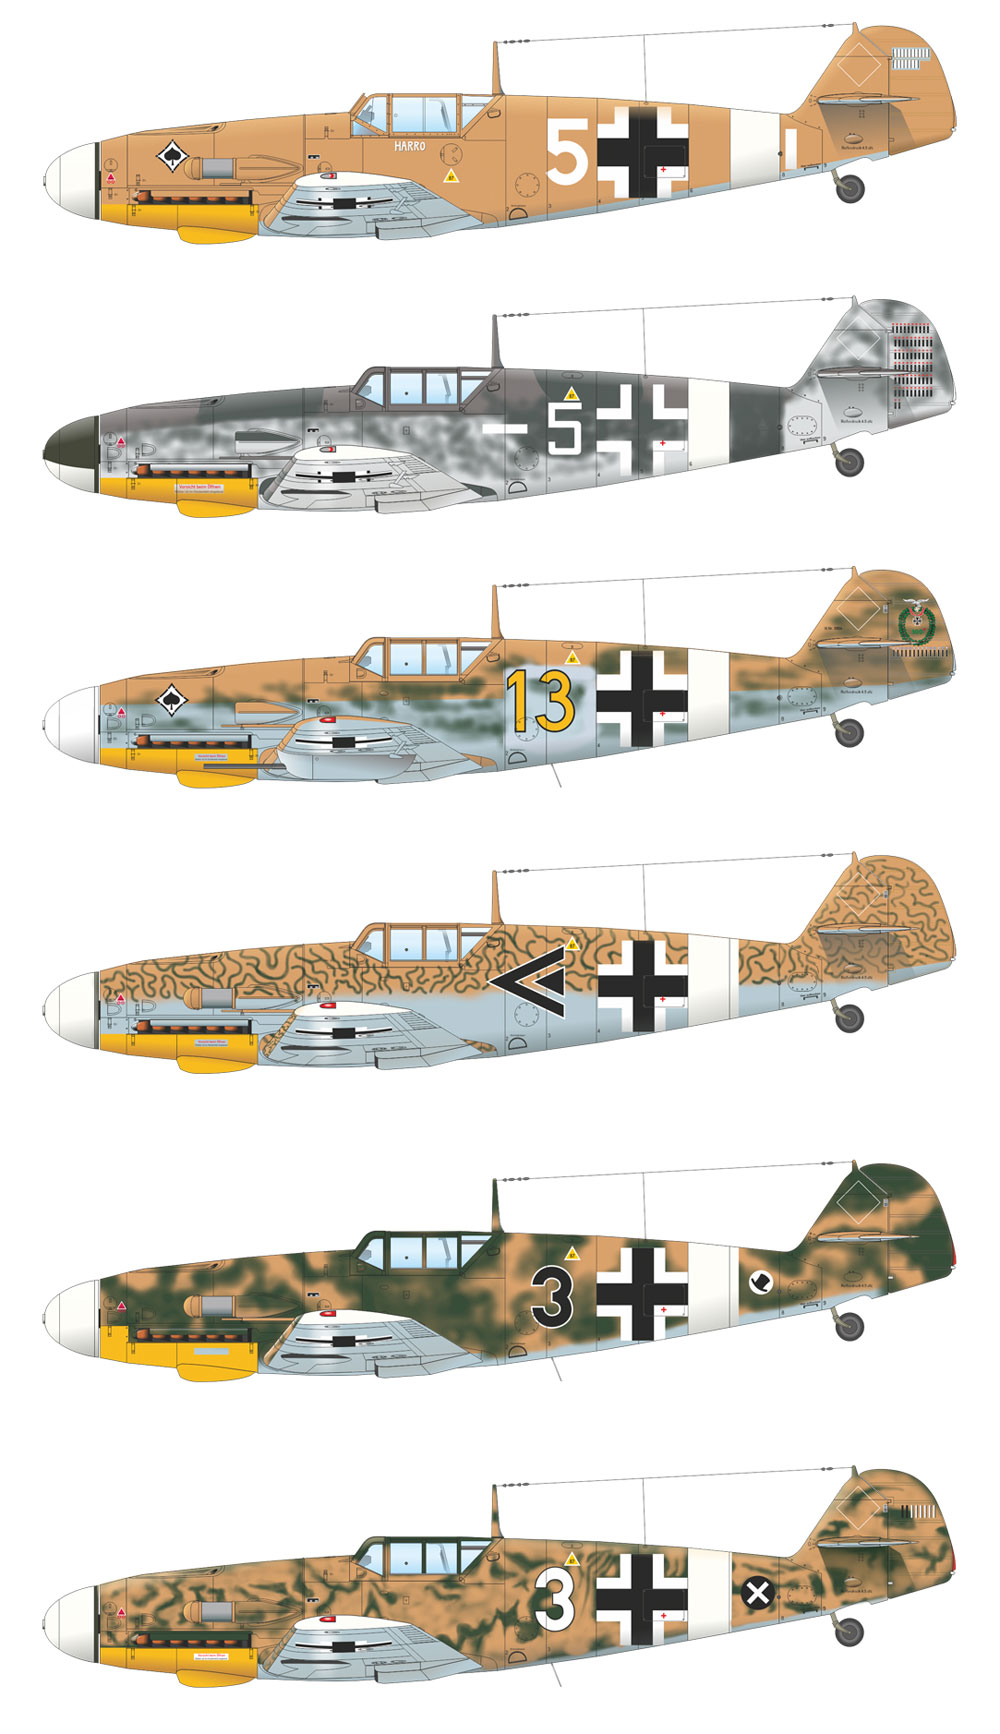 メッサーシュミット Bf109F-4 & Bf109G-2 アフリカ プラモデル (エデュアルド 1/48 リミテッドエディション No.11116) 商品画像_4